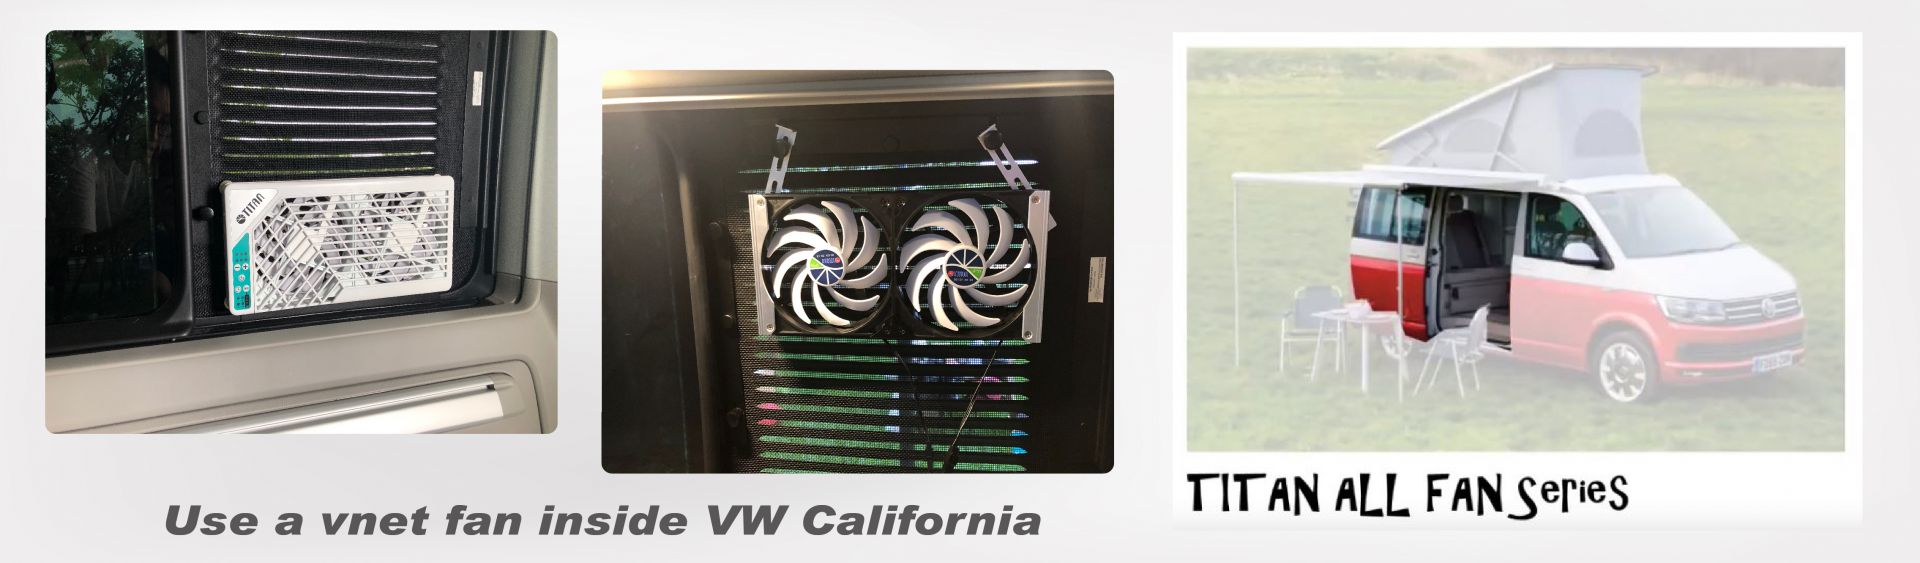 VW California'nın iç havalandırması: yan pencere